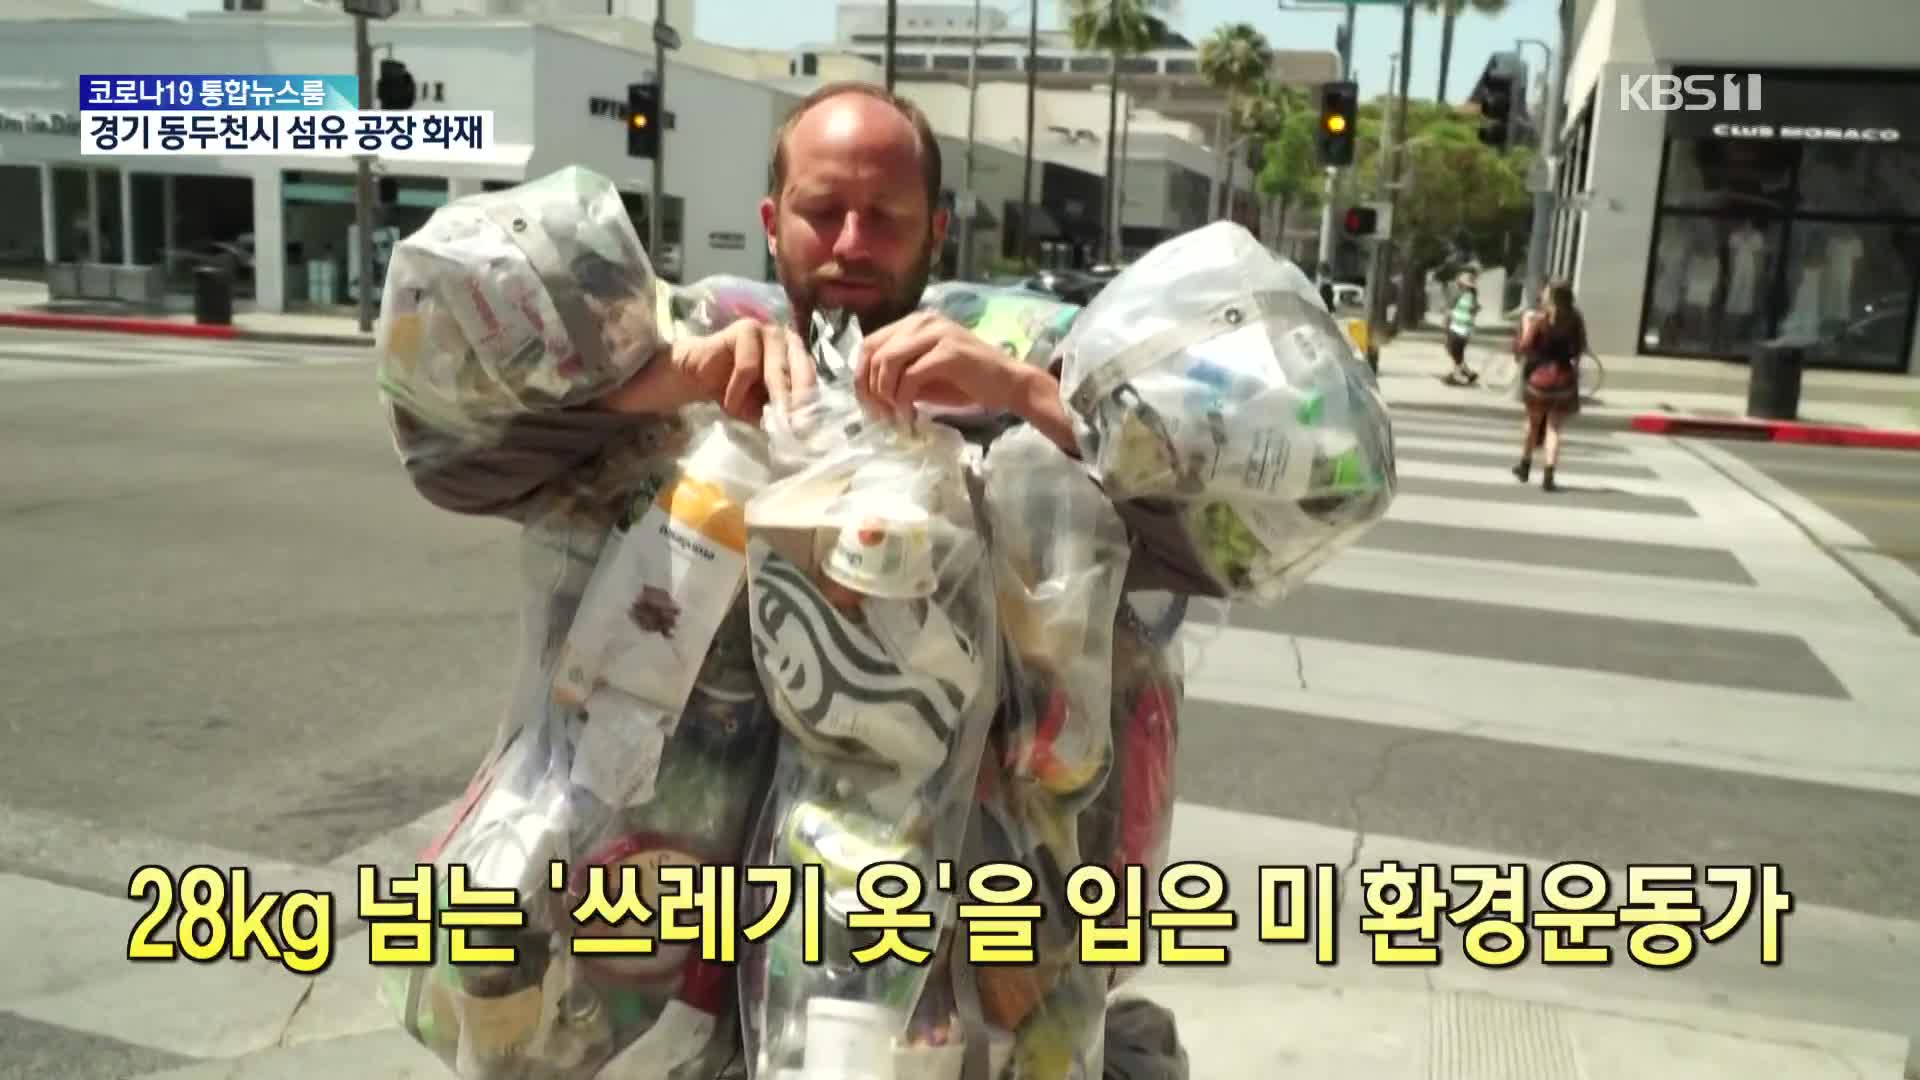 [톡톡 지구촌] 28kg 넘는 ‘쓰레기옷’을 입은 미 환경운동가